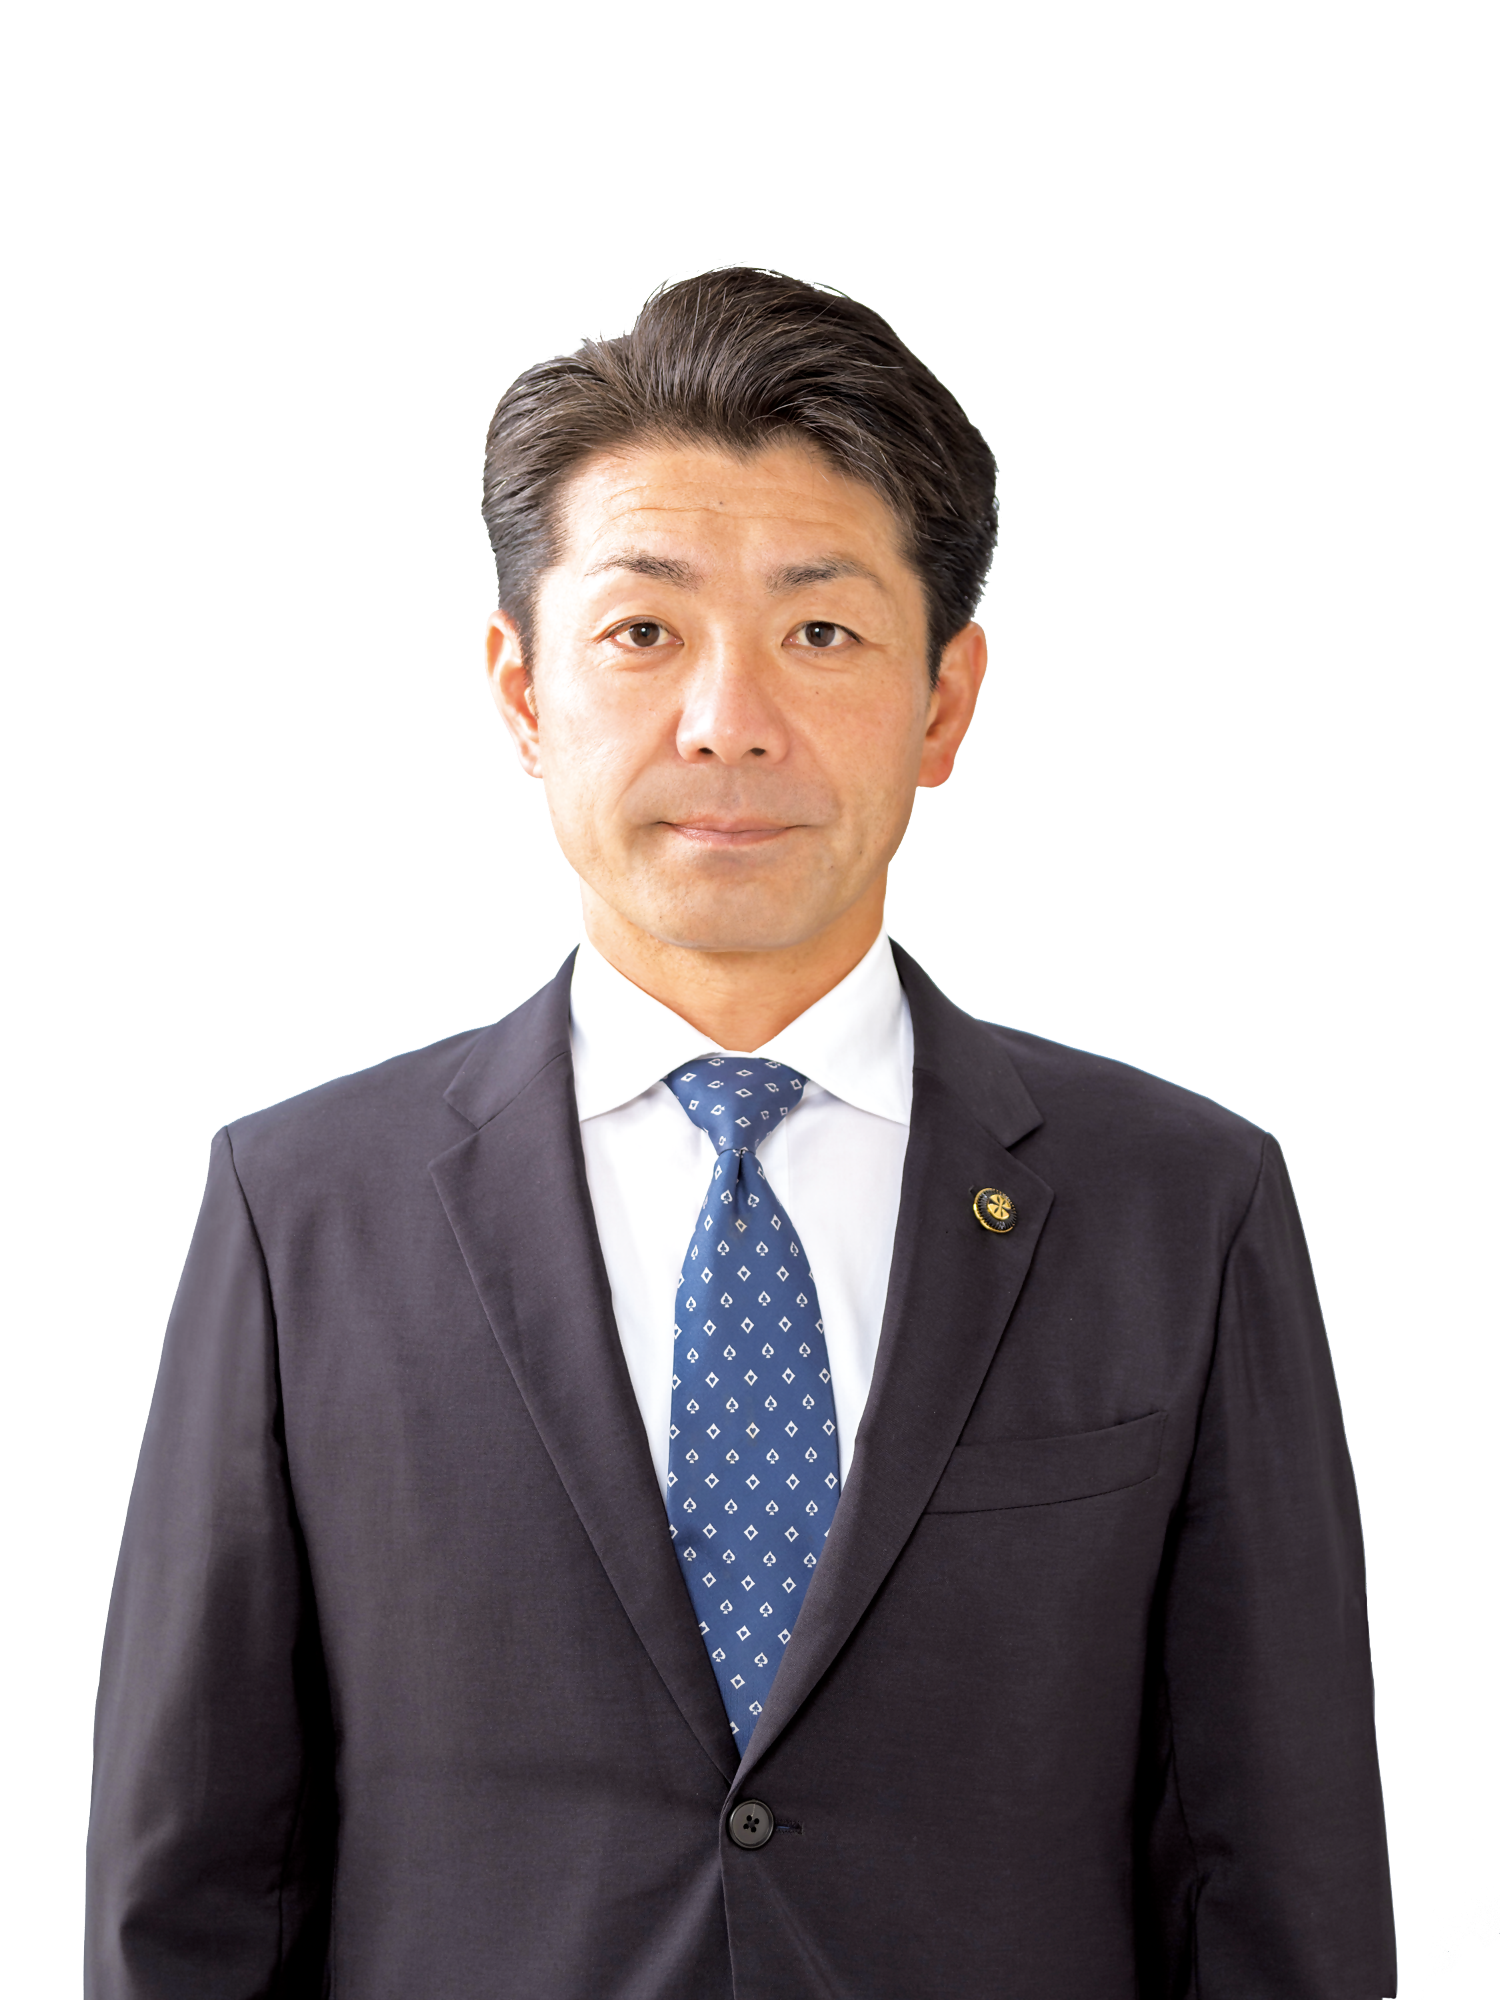 渡辺市長のスーツ姿の写真